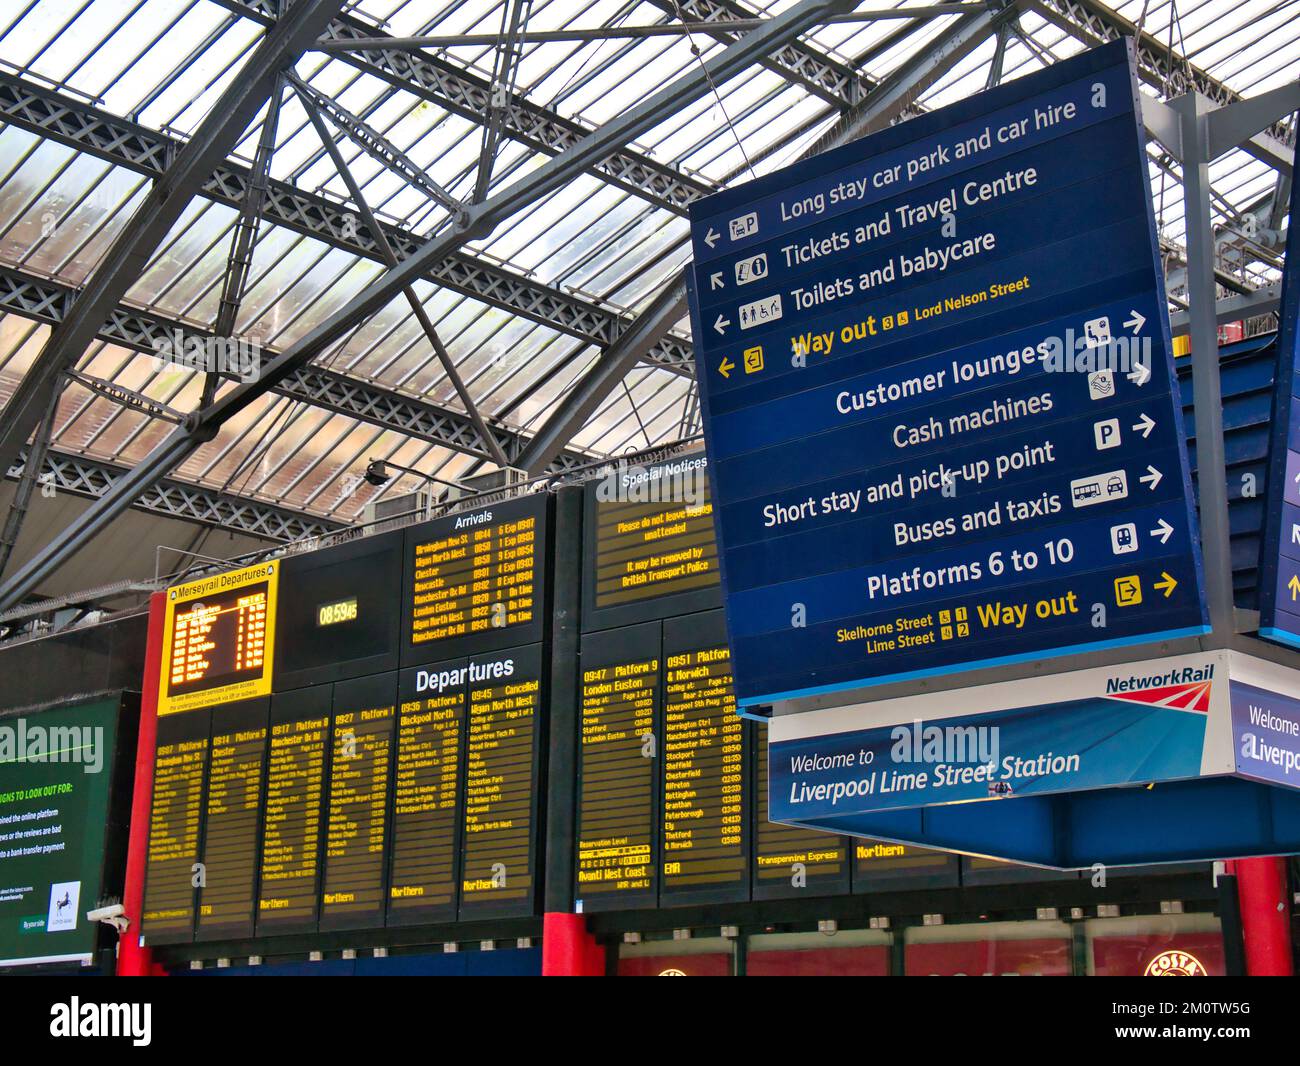 Alla stazione ferroviaria di Liverpool Lime Street, un cartello blu rettangolare con scritte bianche che mostrano le indicazioni per diversi luoghi. Informazioni sulla partenza del treno Foto Stock